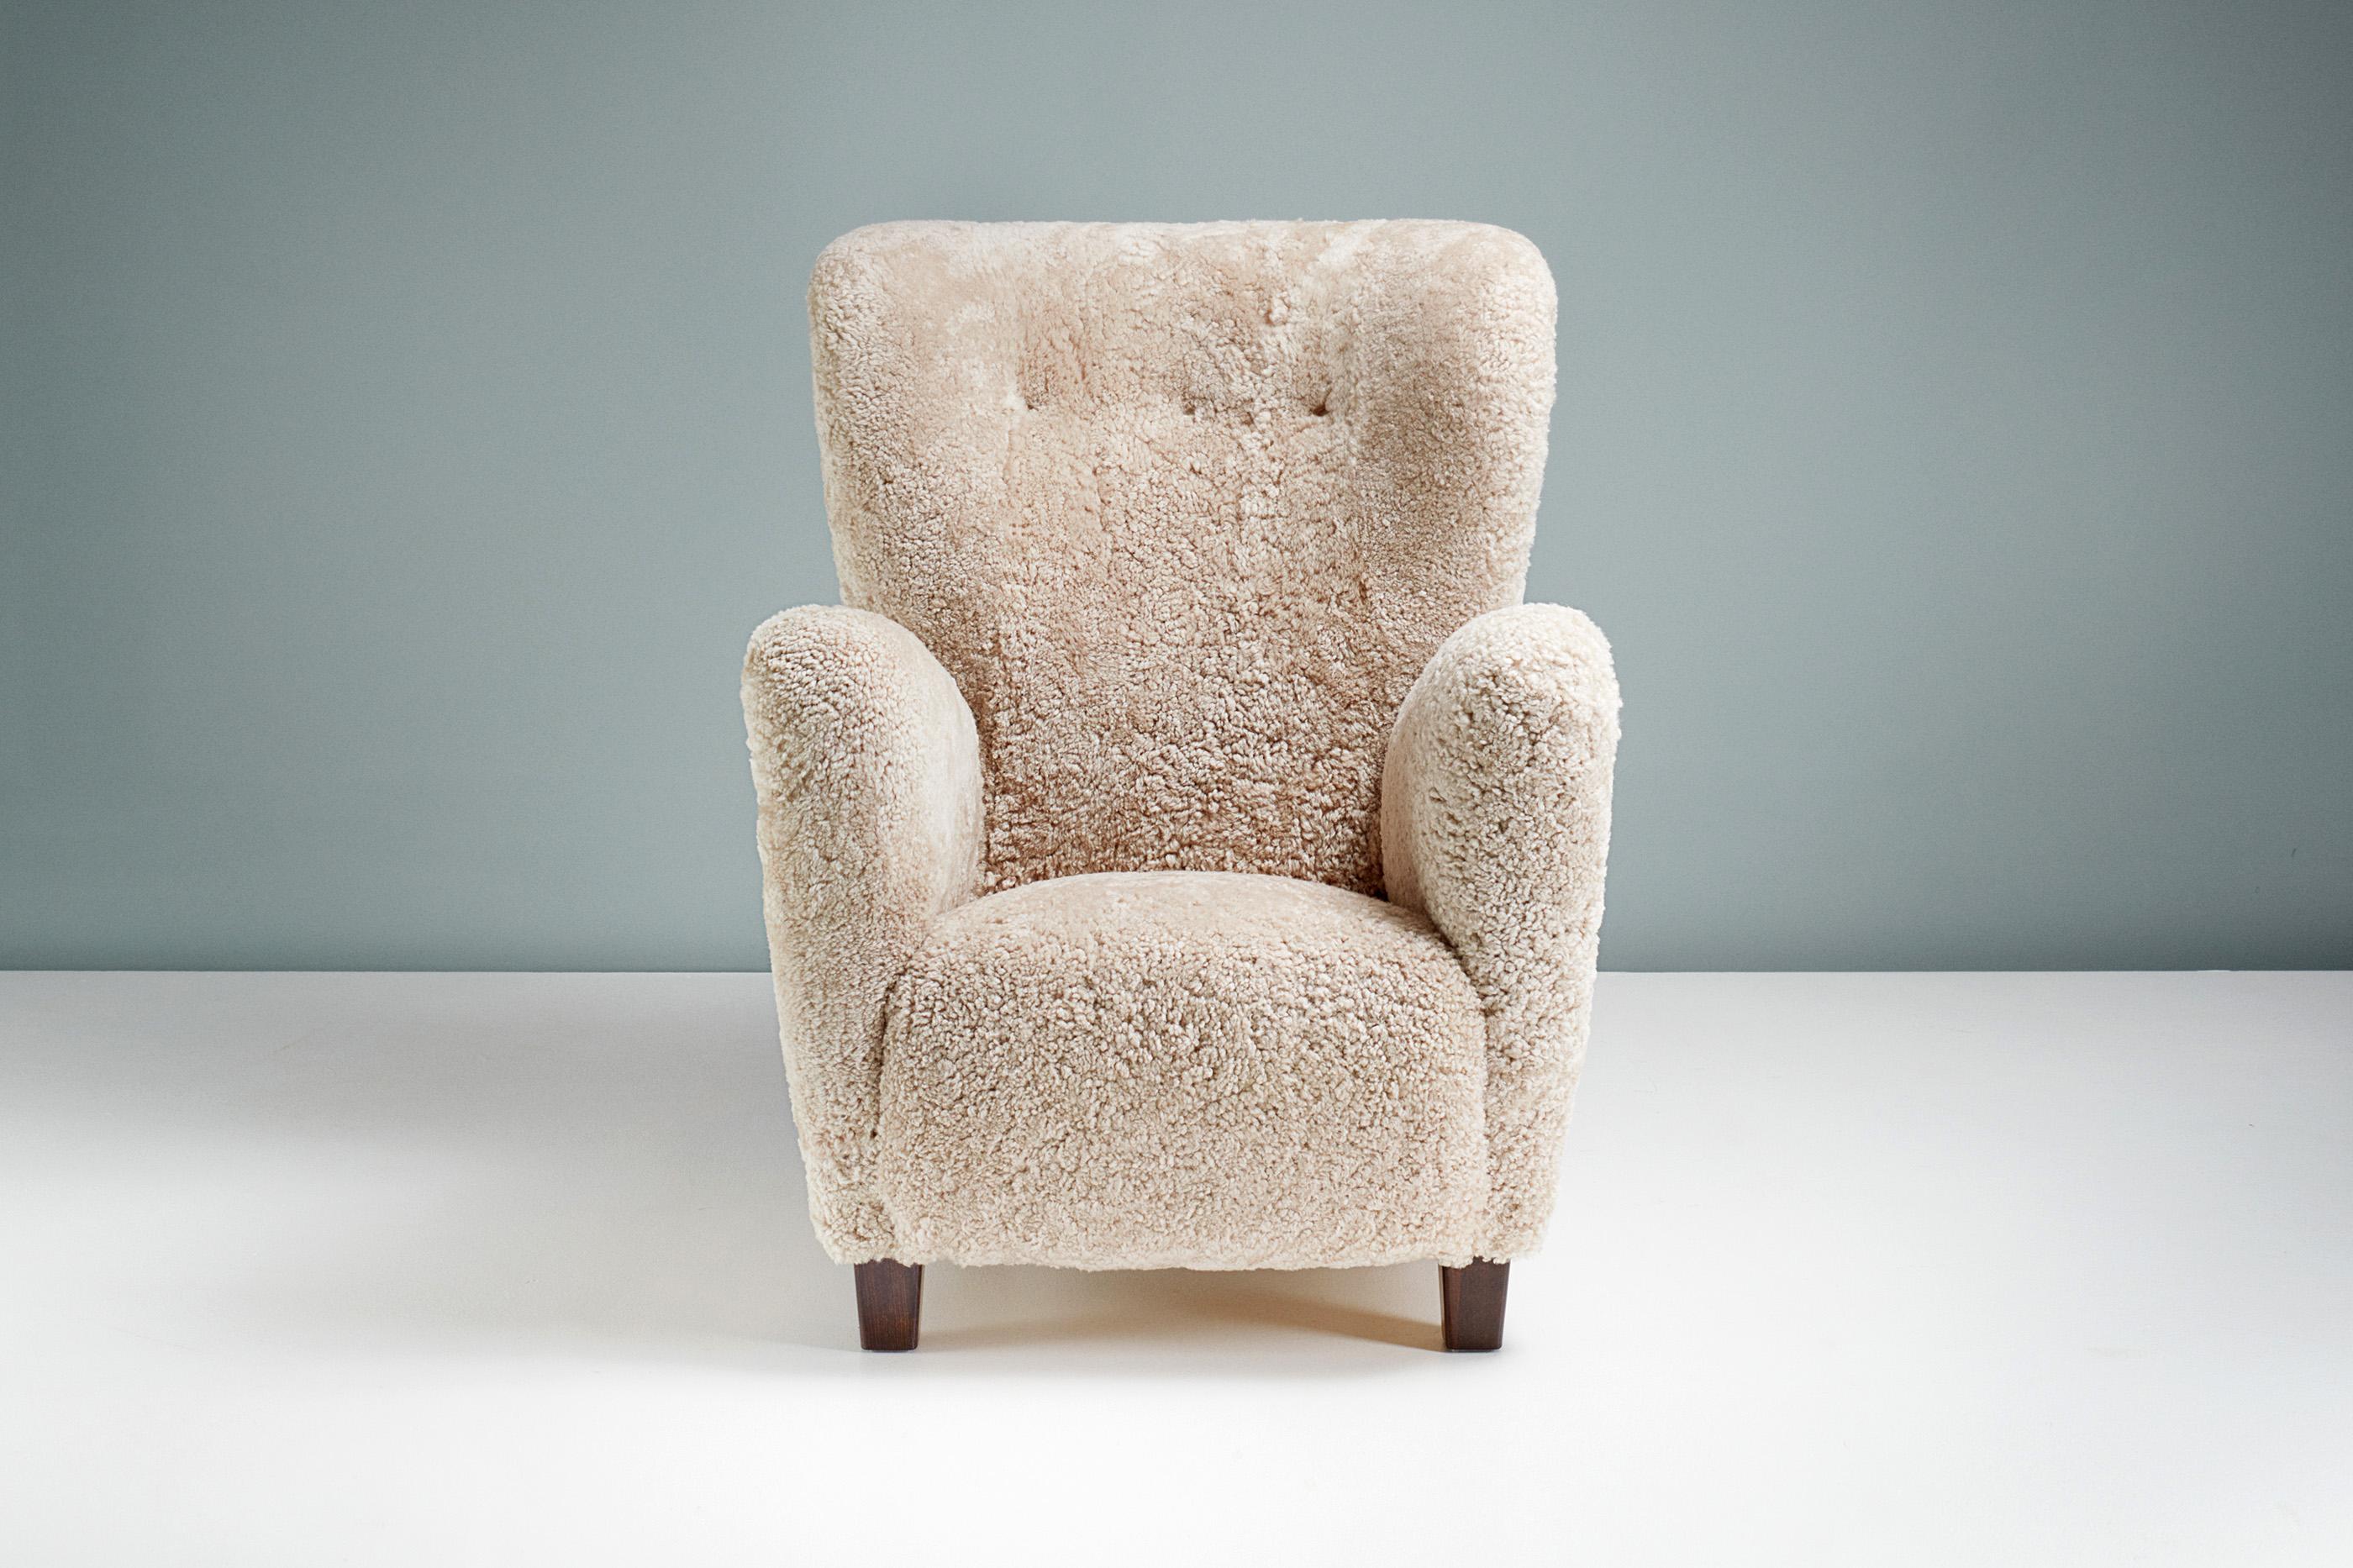 Dänischer Schreinersessel aus Schafsleder, um 1940.

Sessel mit hoher Rückenlehne, hergestellt von einem dänischen Tischler in den 1940er Jahren. Er hat eine geschwungene Rückenlehne und Beine aus gebeizter Buche. Der Stuhl wurde in unseren Londoner